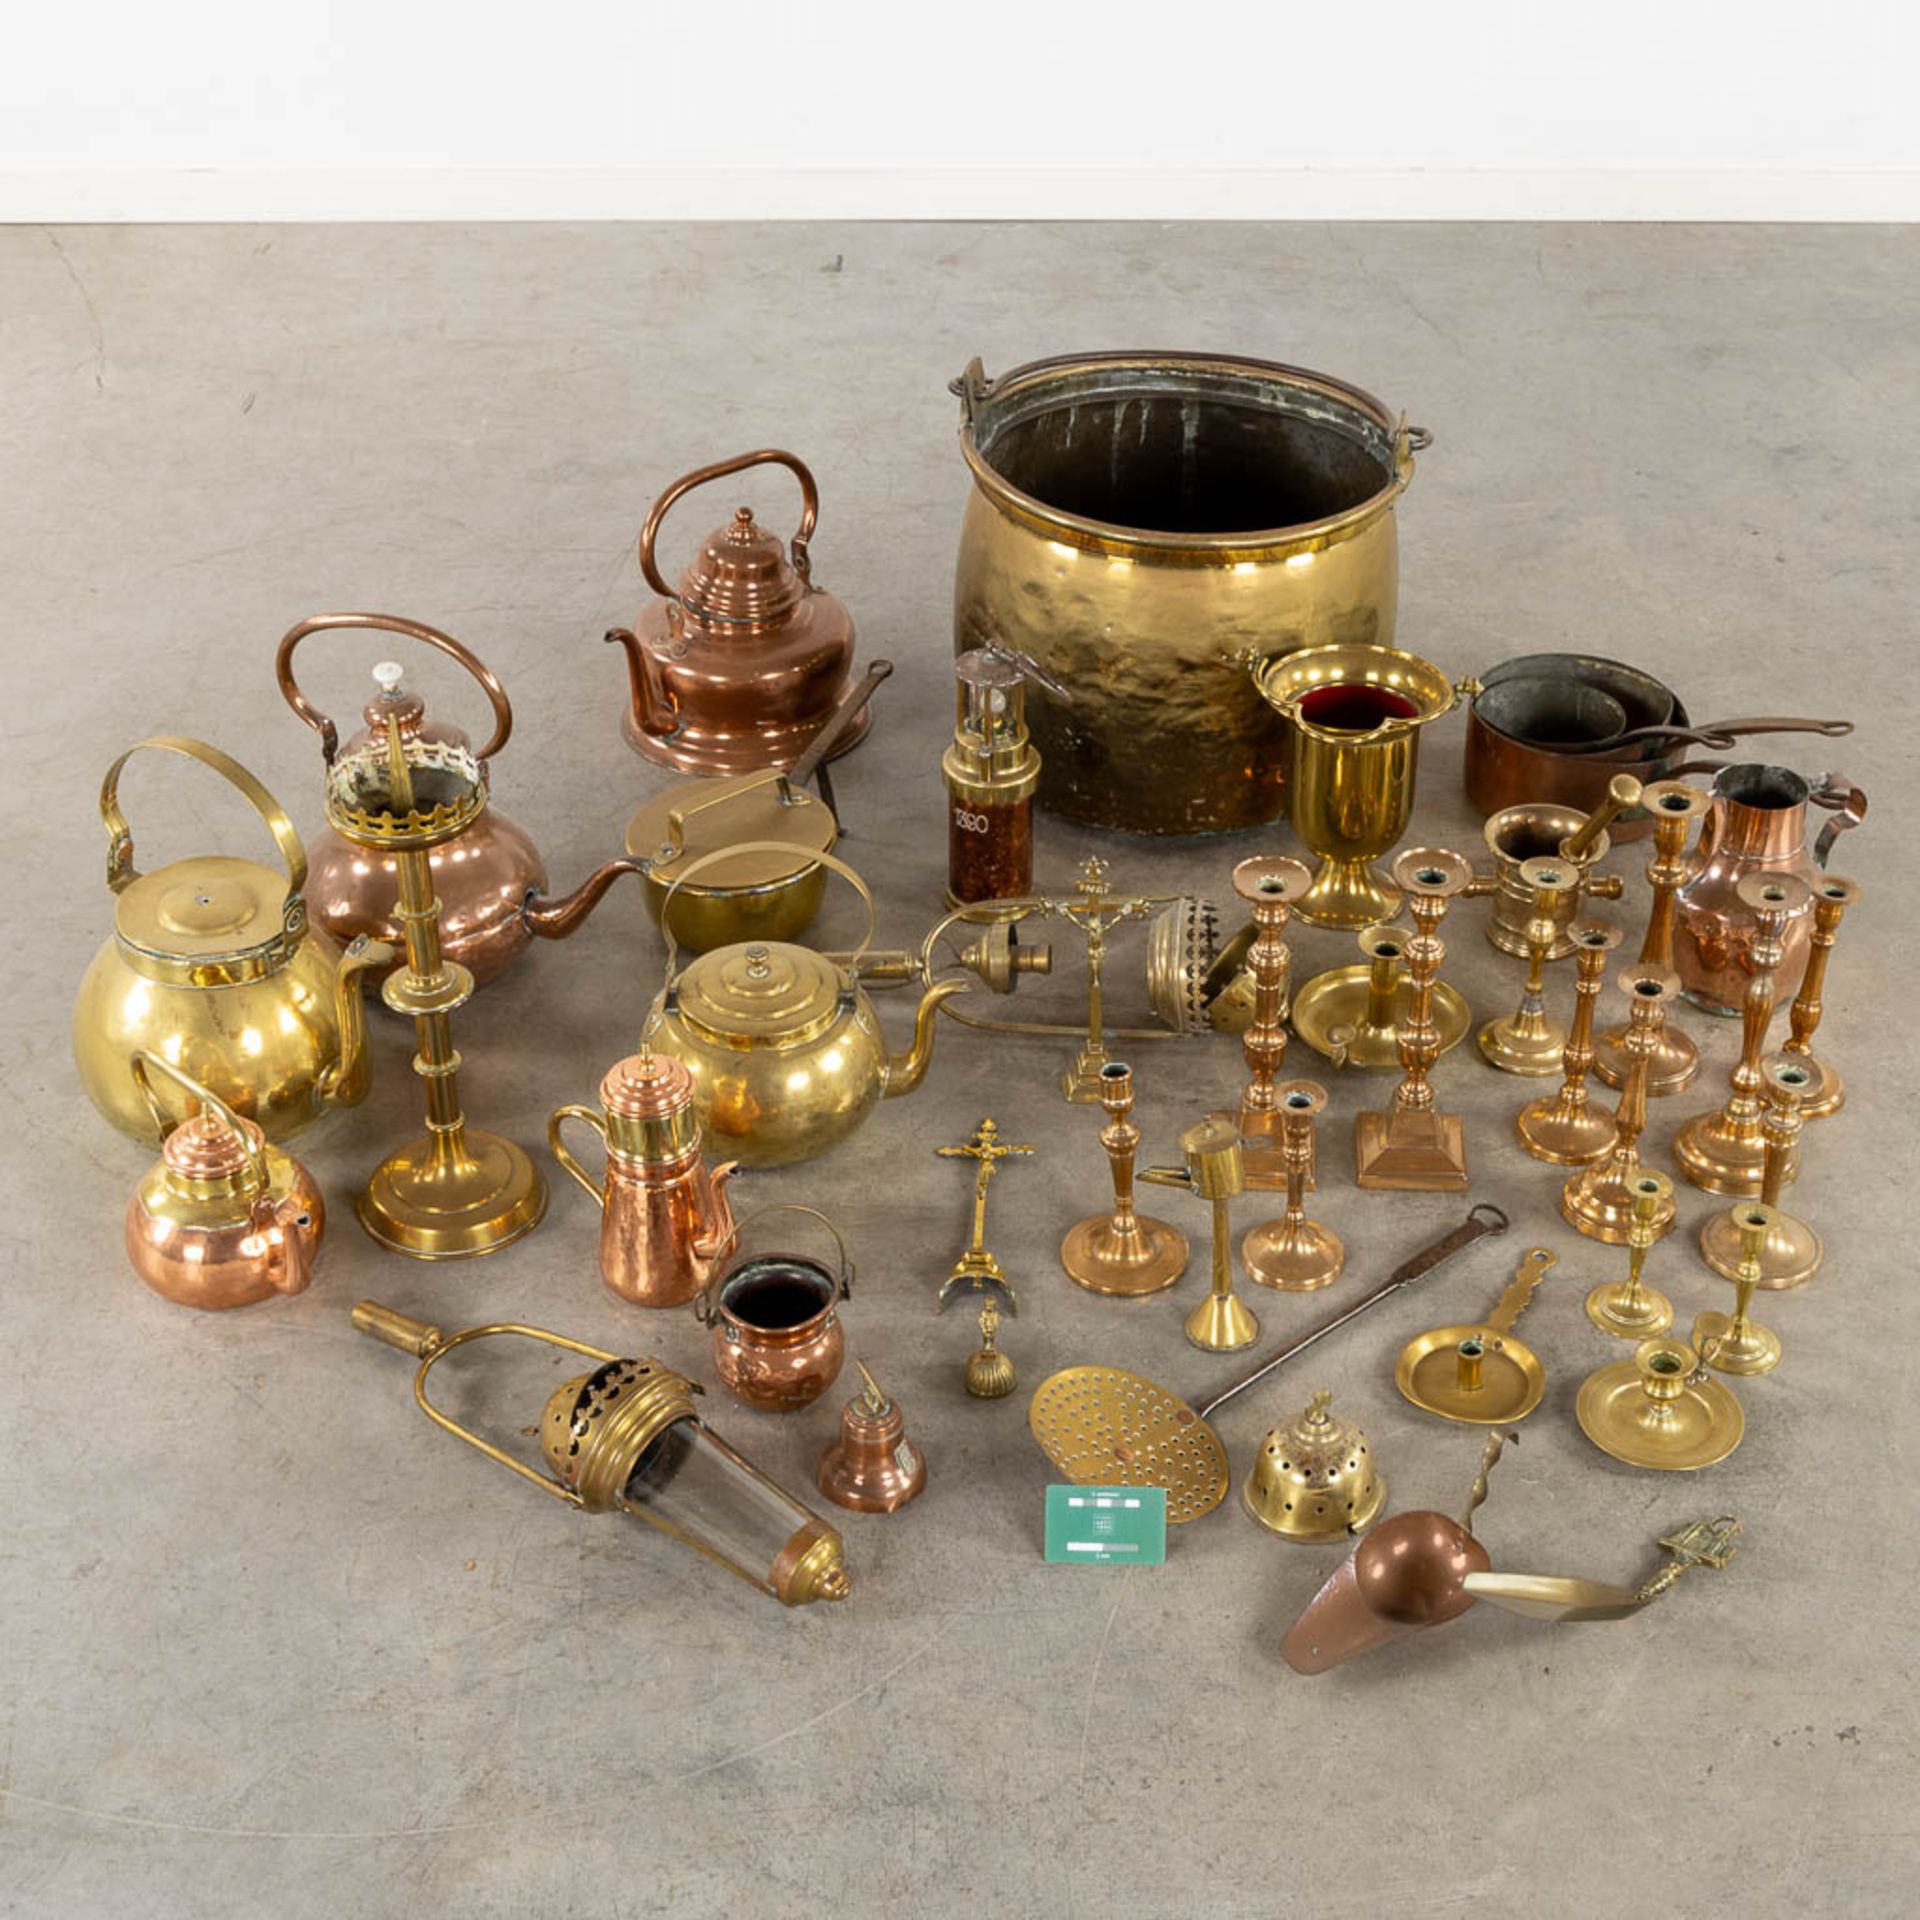 A large collection of antique copper items. (H:37 x D:46 cm) - Bild 2 aus 8